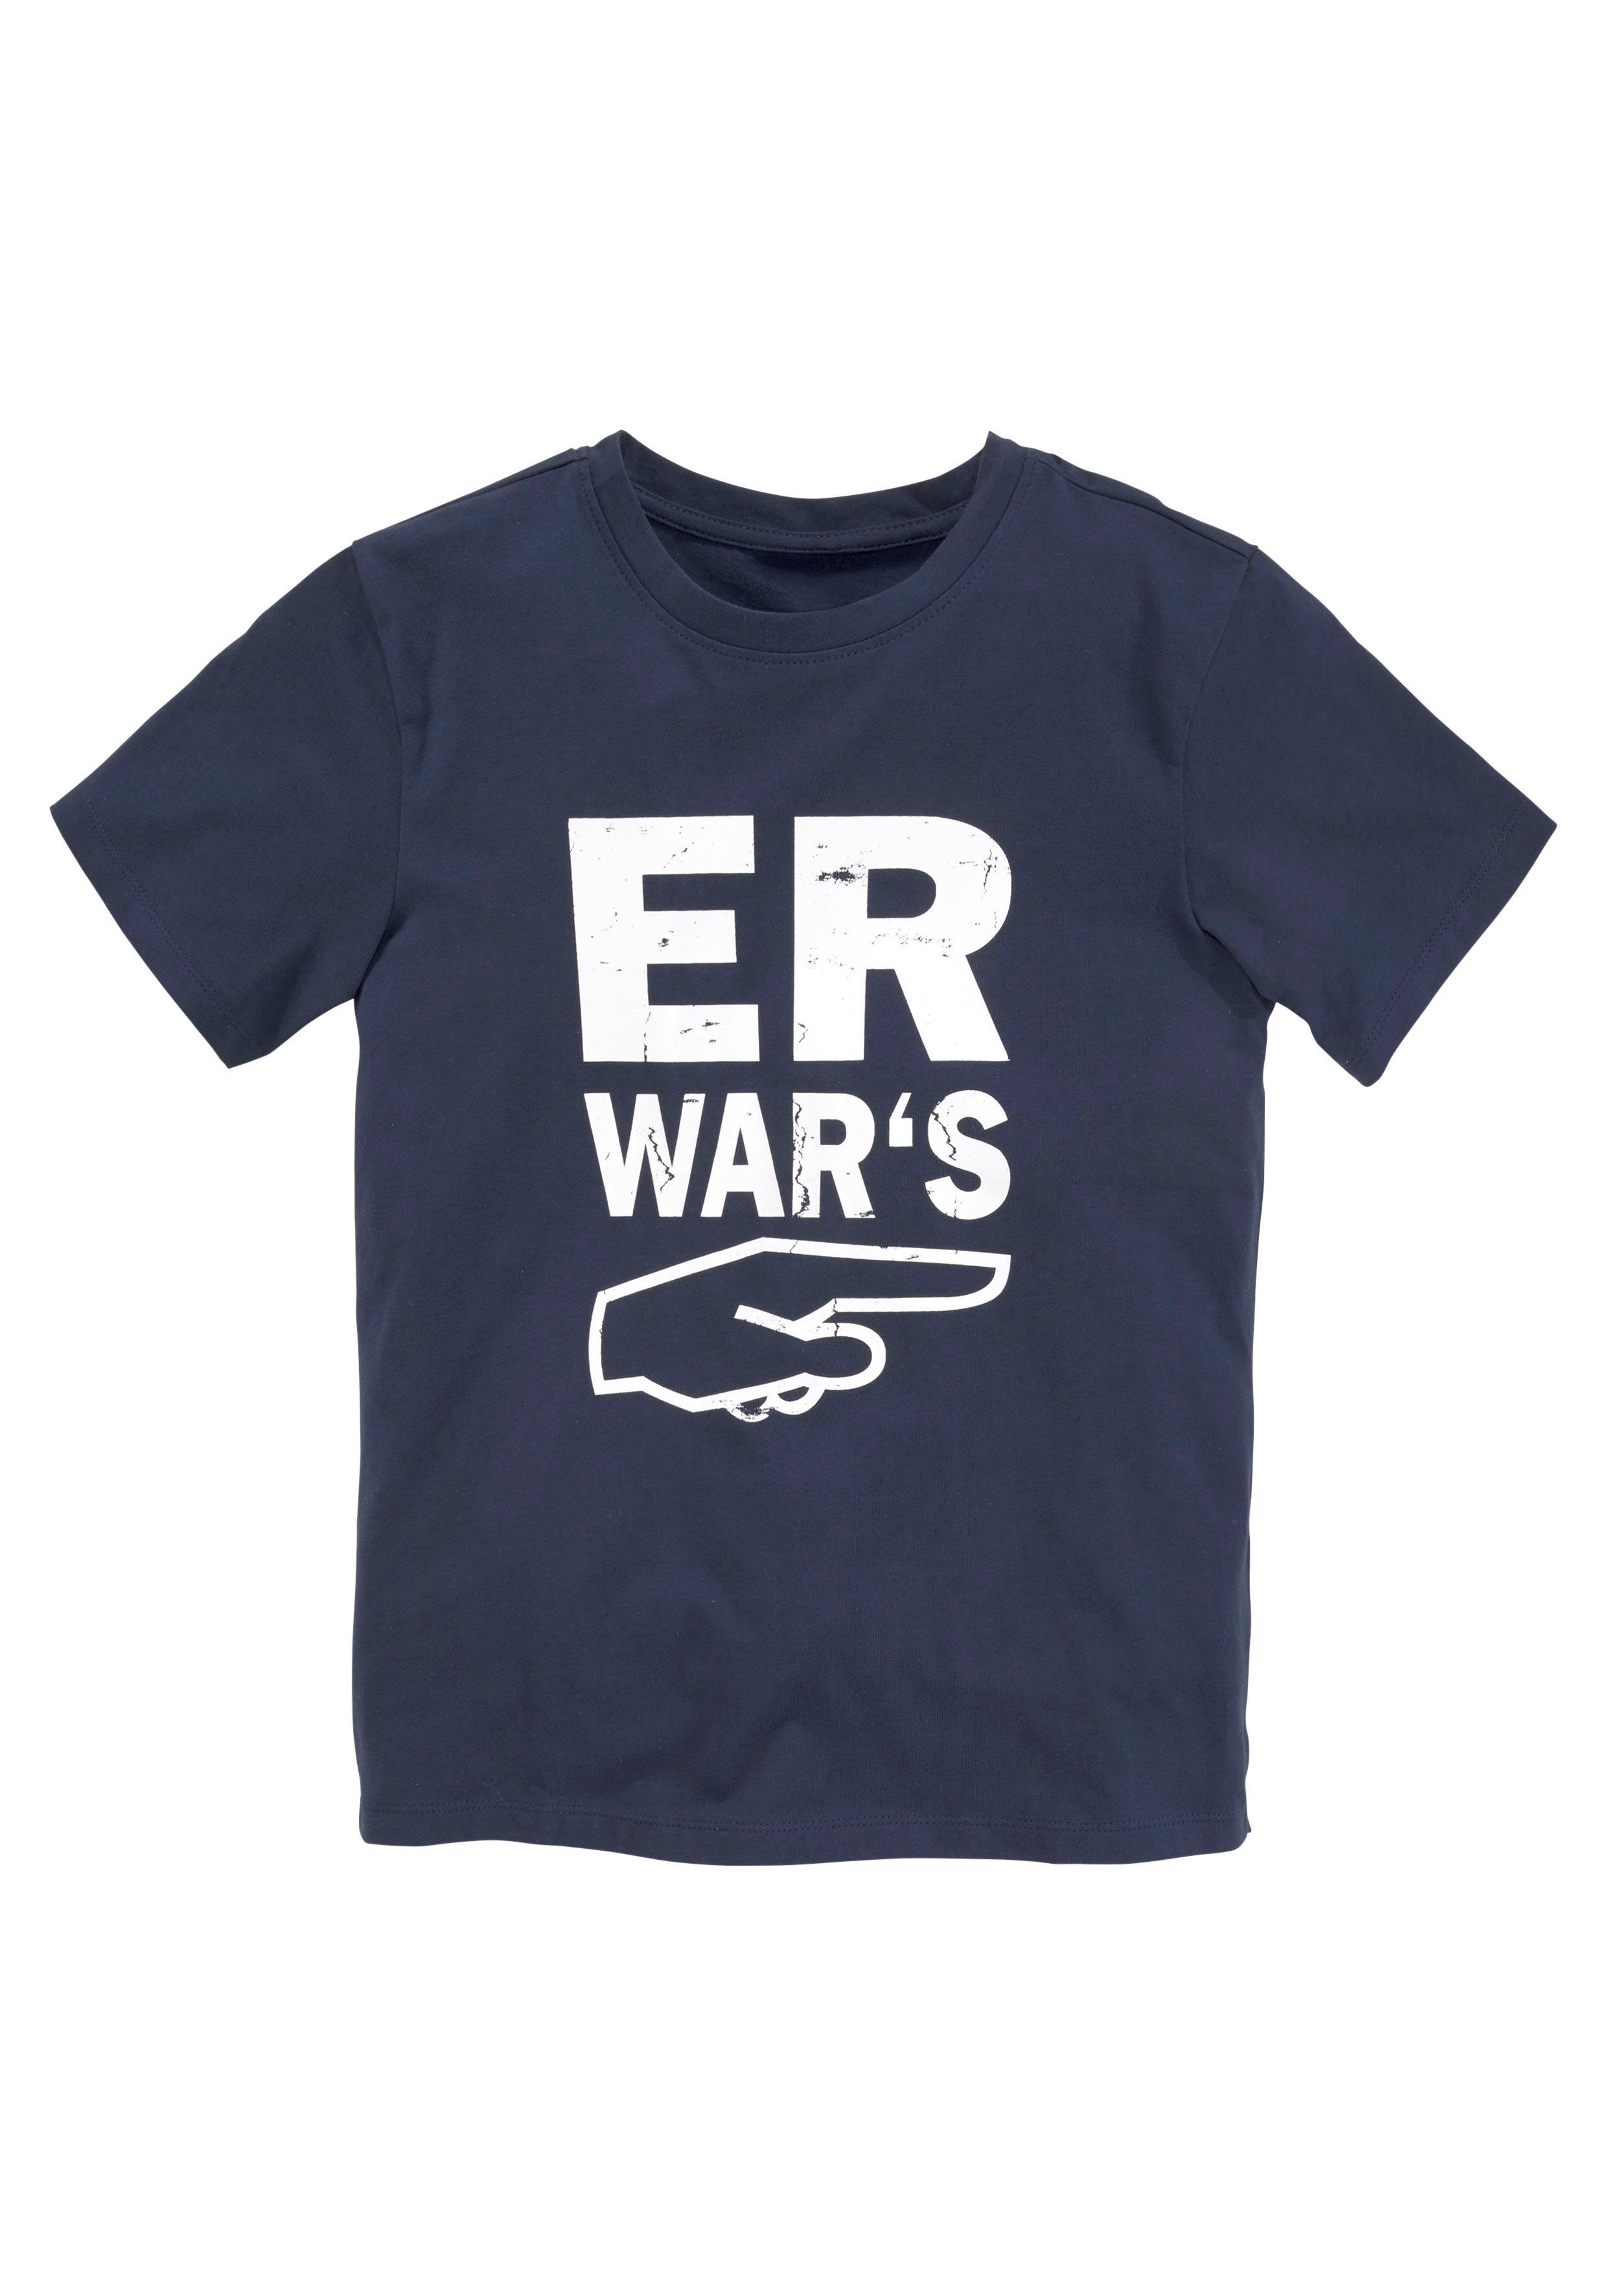 WAR`S, KIDSWORLD ER T-Shirt Spruch